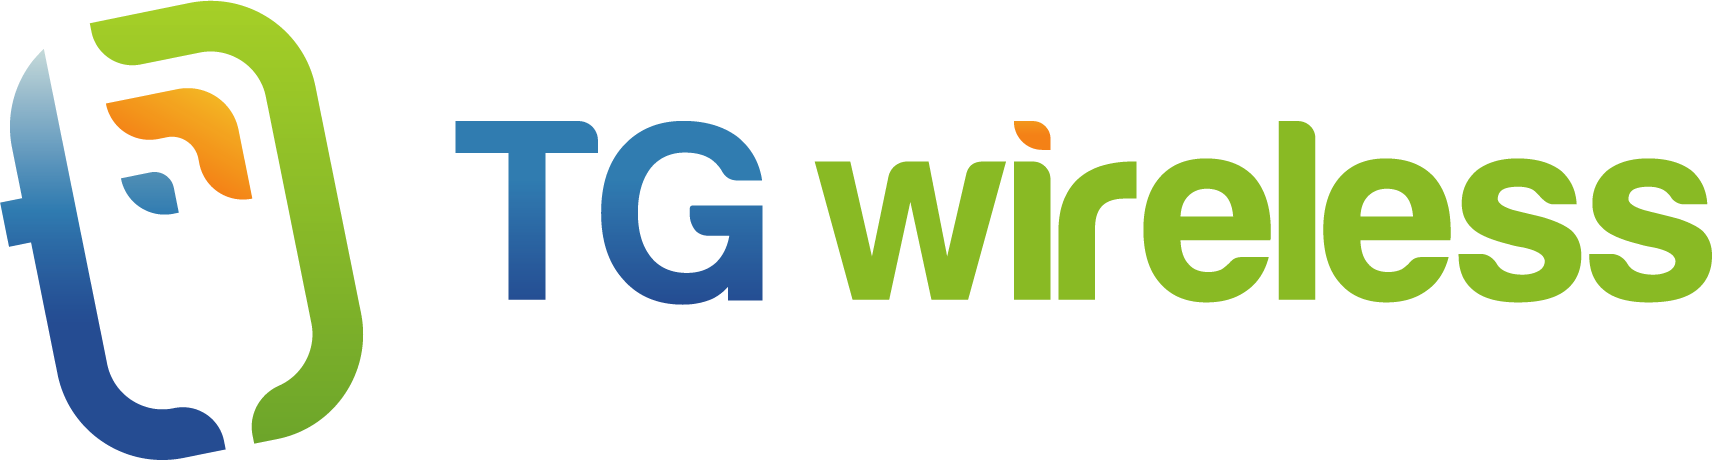 TG Wireless Website